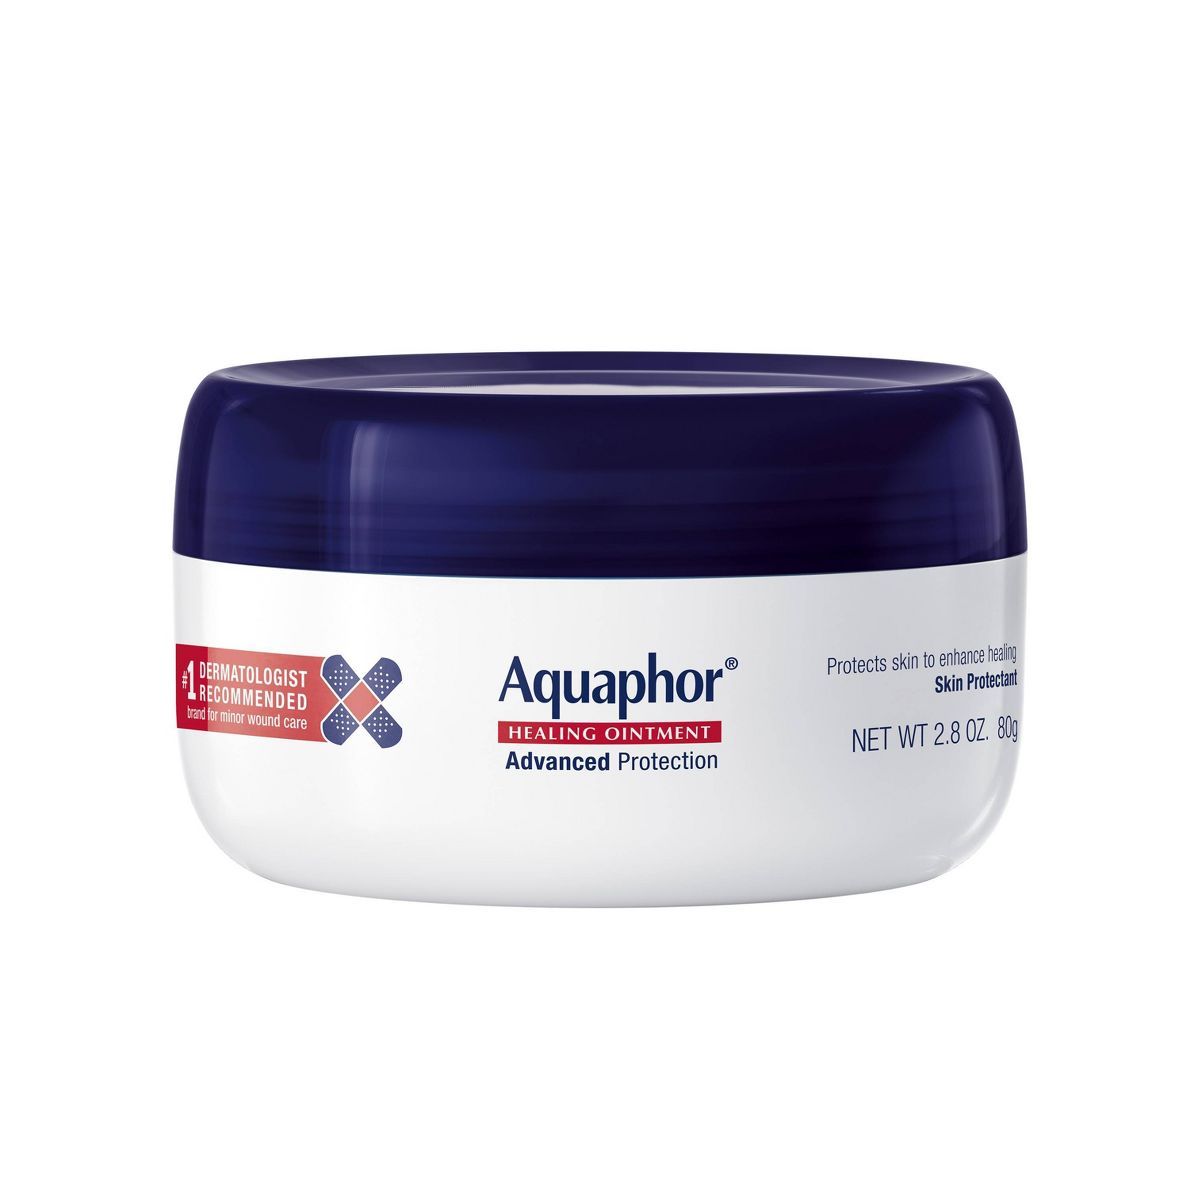 Aquaphor Body Healing Ointment Jar - 2.8oz | Target